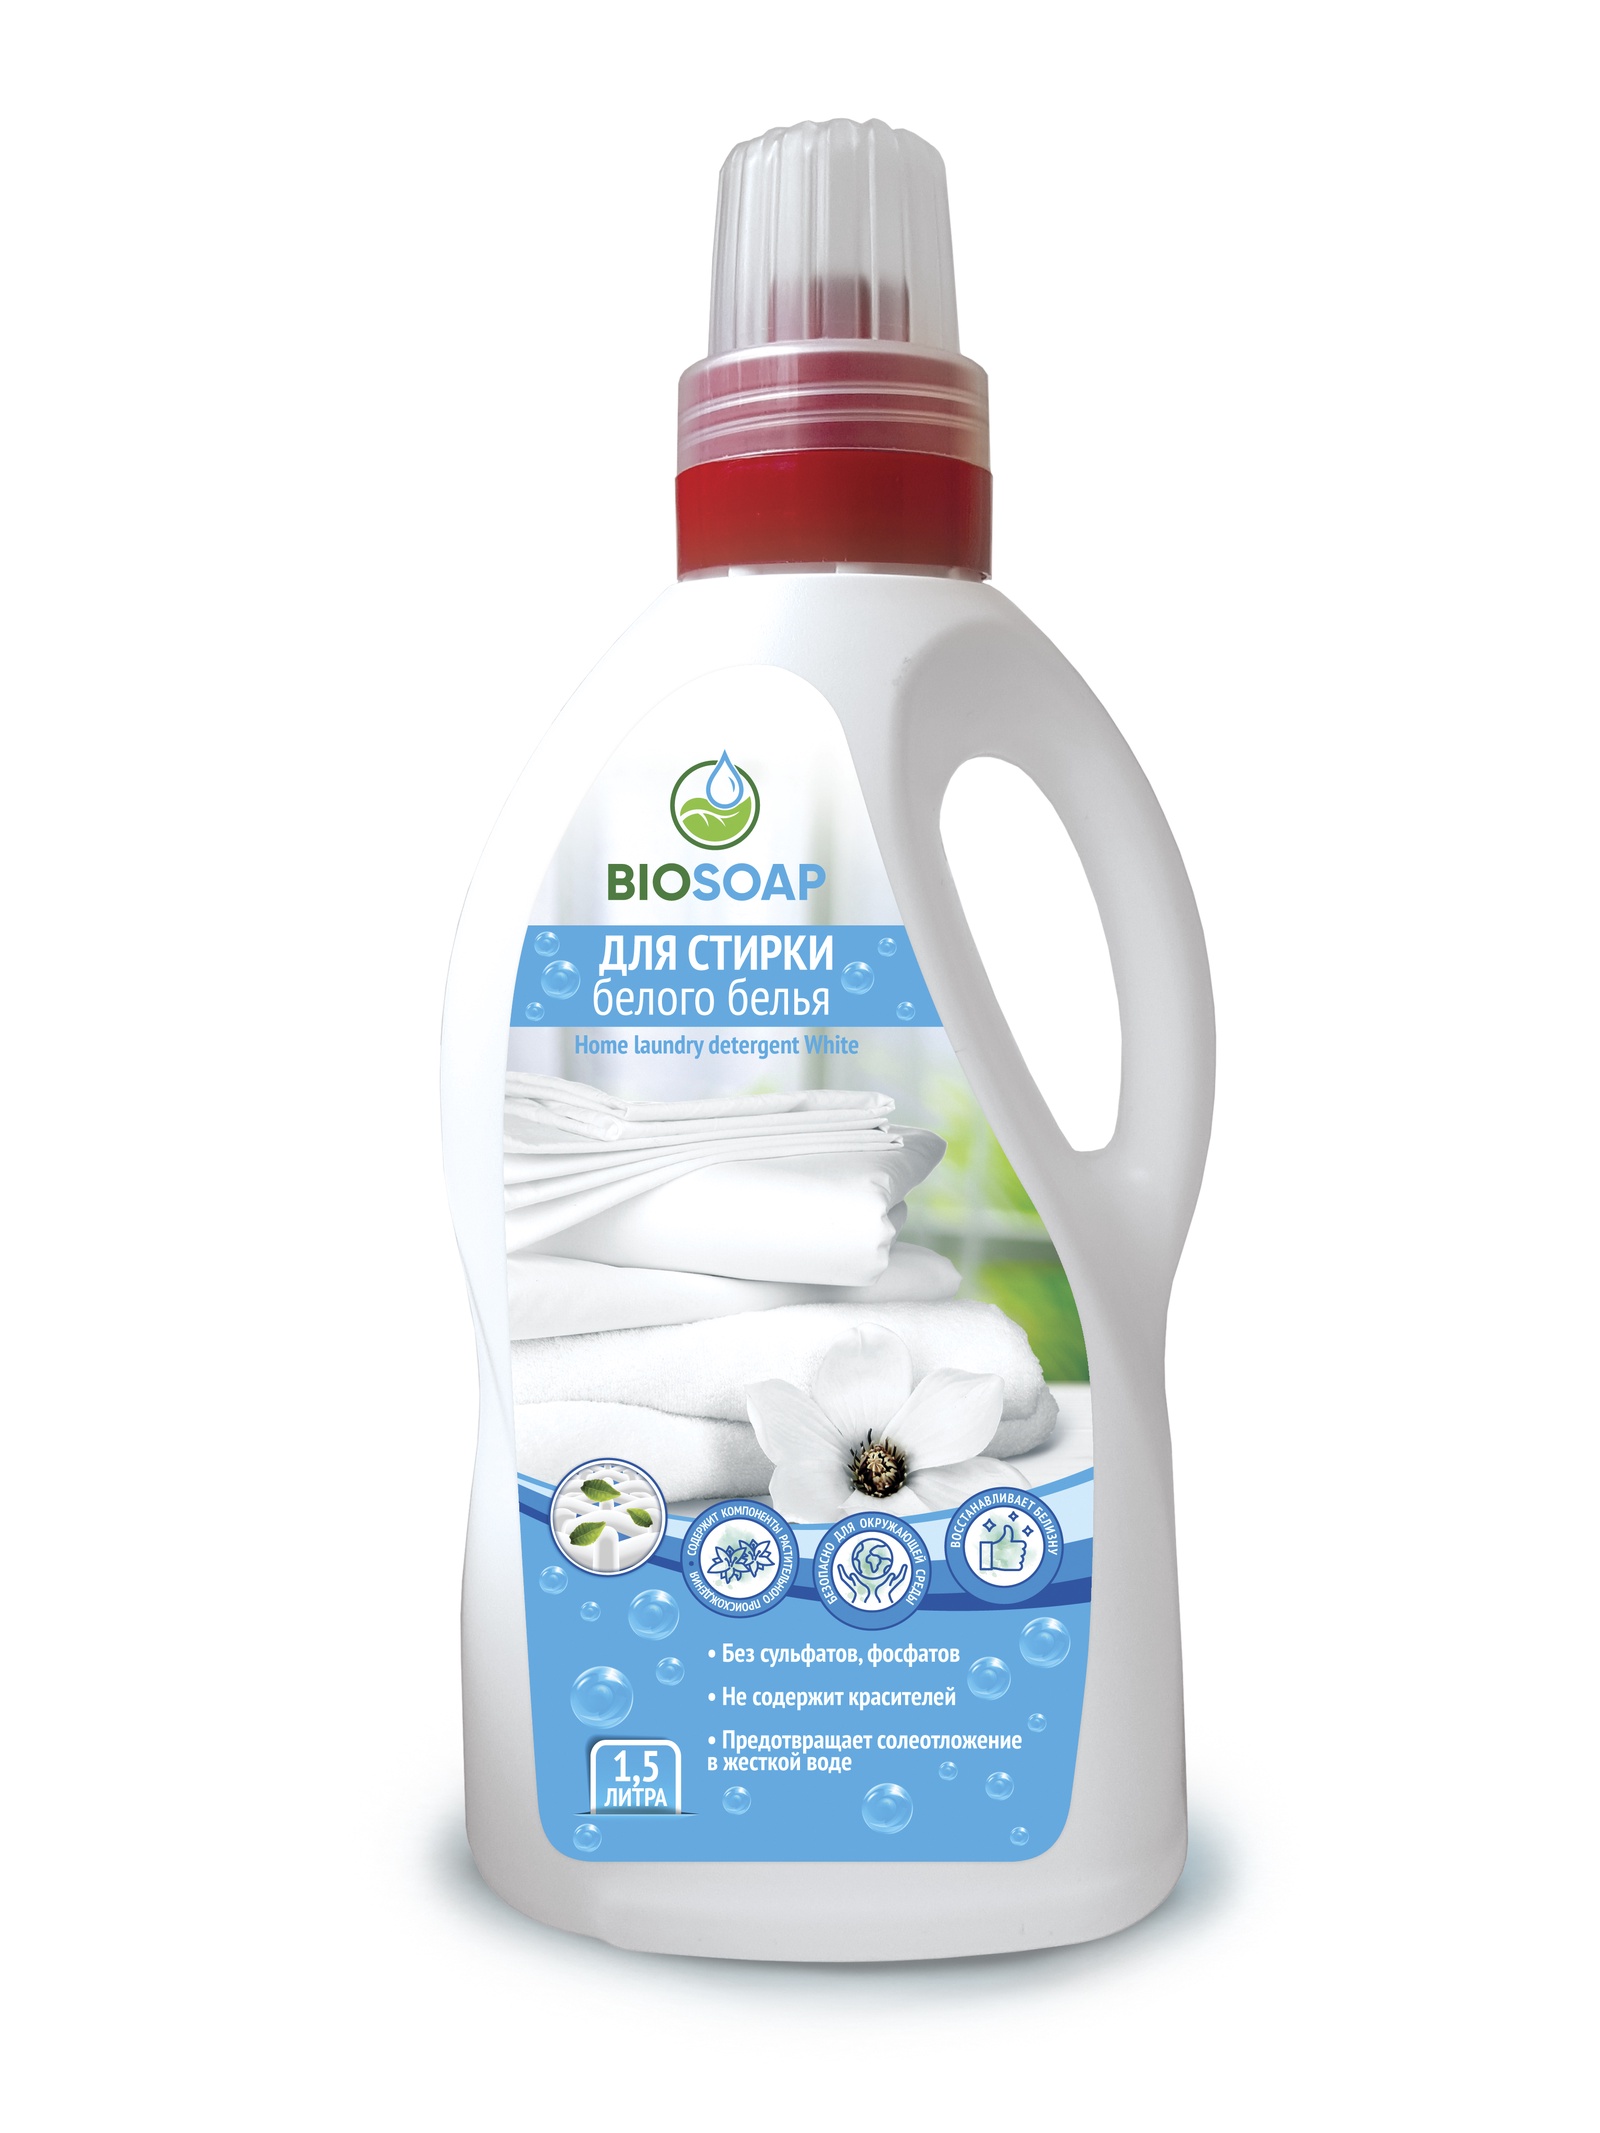 фото Жидкое средство для стирки белого белья Home laundry detergent White Biosoap